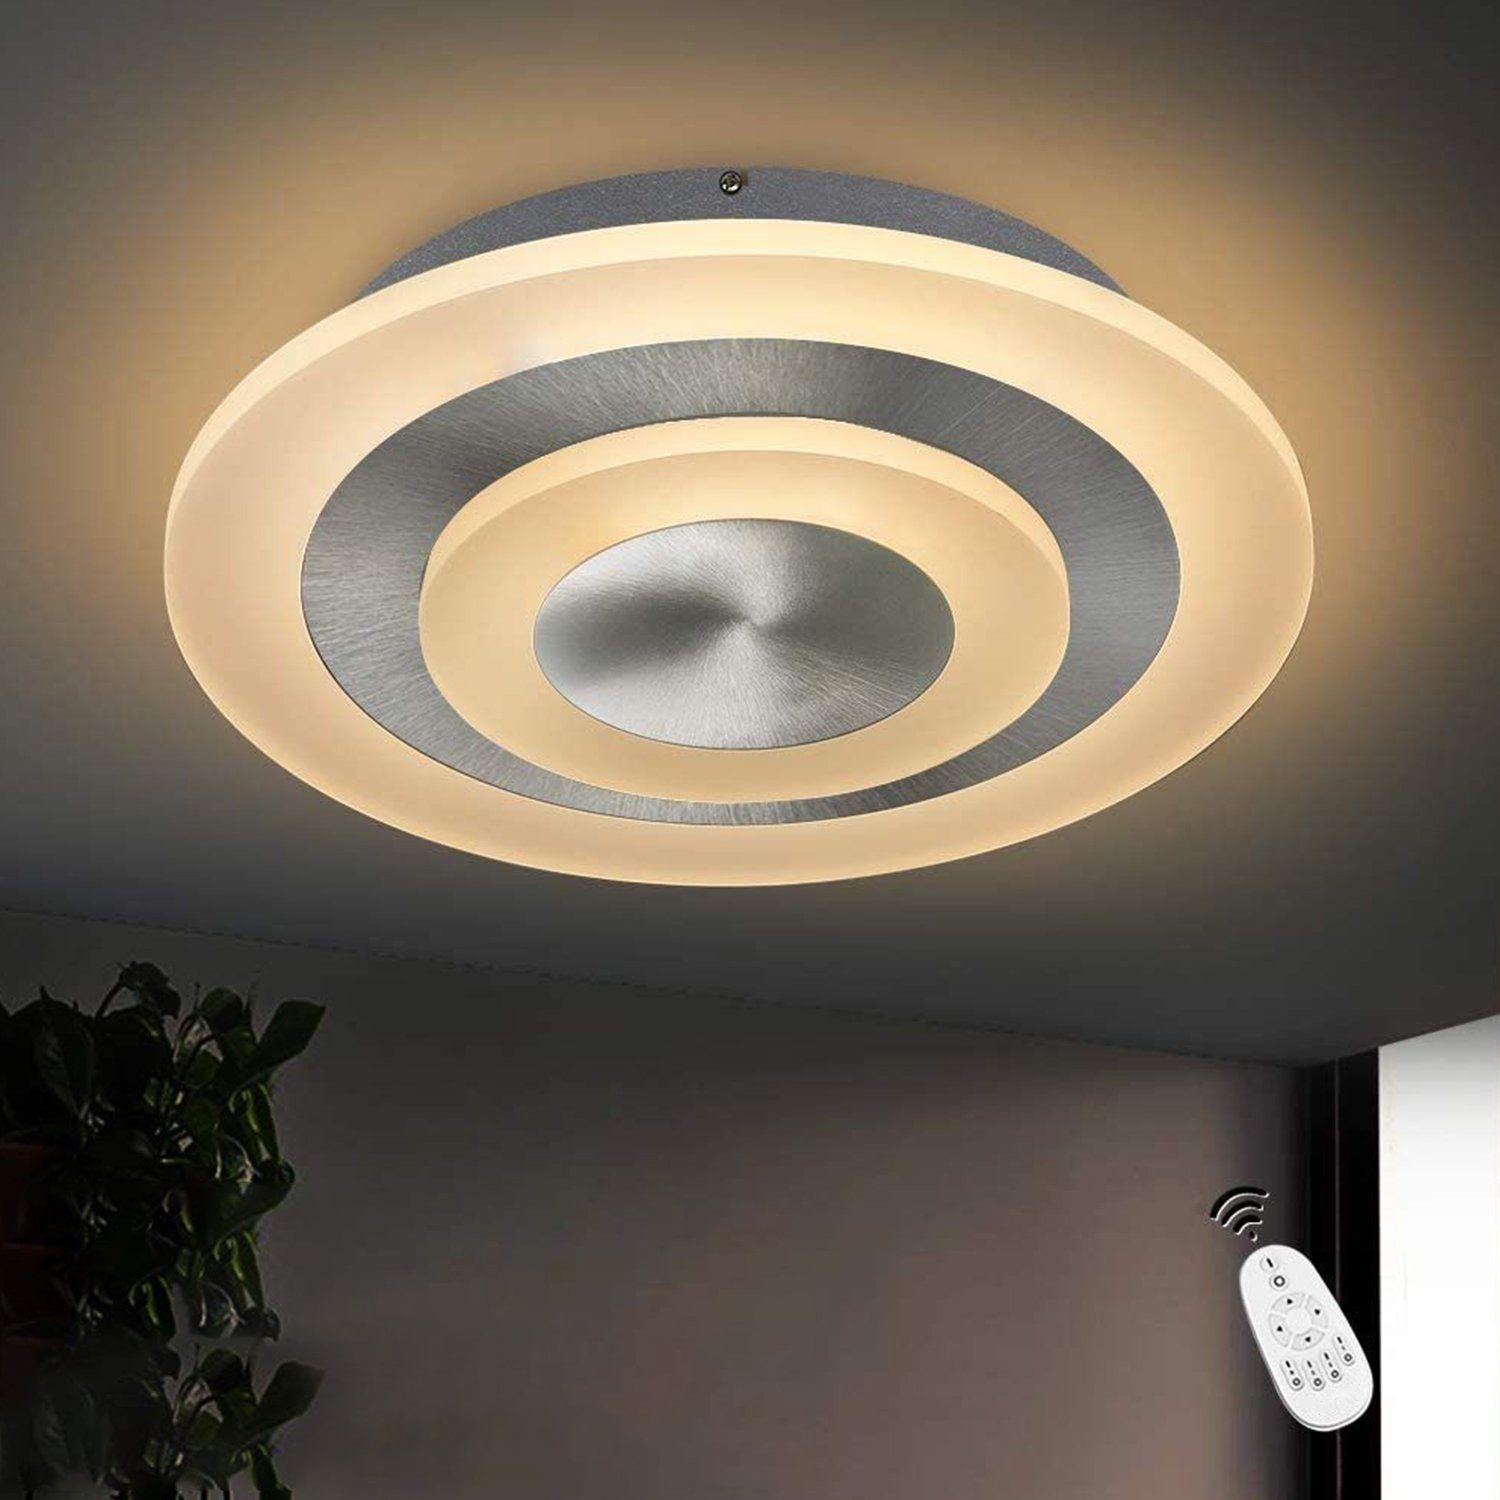 ZMH LED Deckenleuchte »Deckenlampe Dimmbar stufenlos mit Fernbedienung für  Wohnzimmer, Schlafzimmer, Büro, Küche Nickel Matt« online kaufen | OTTO